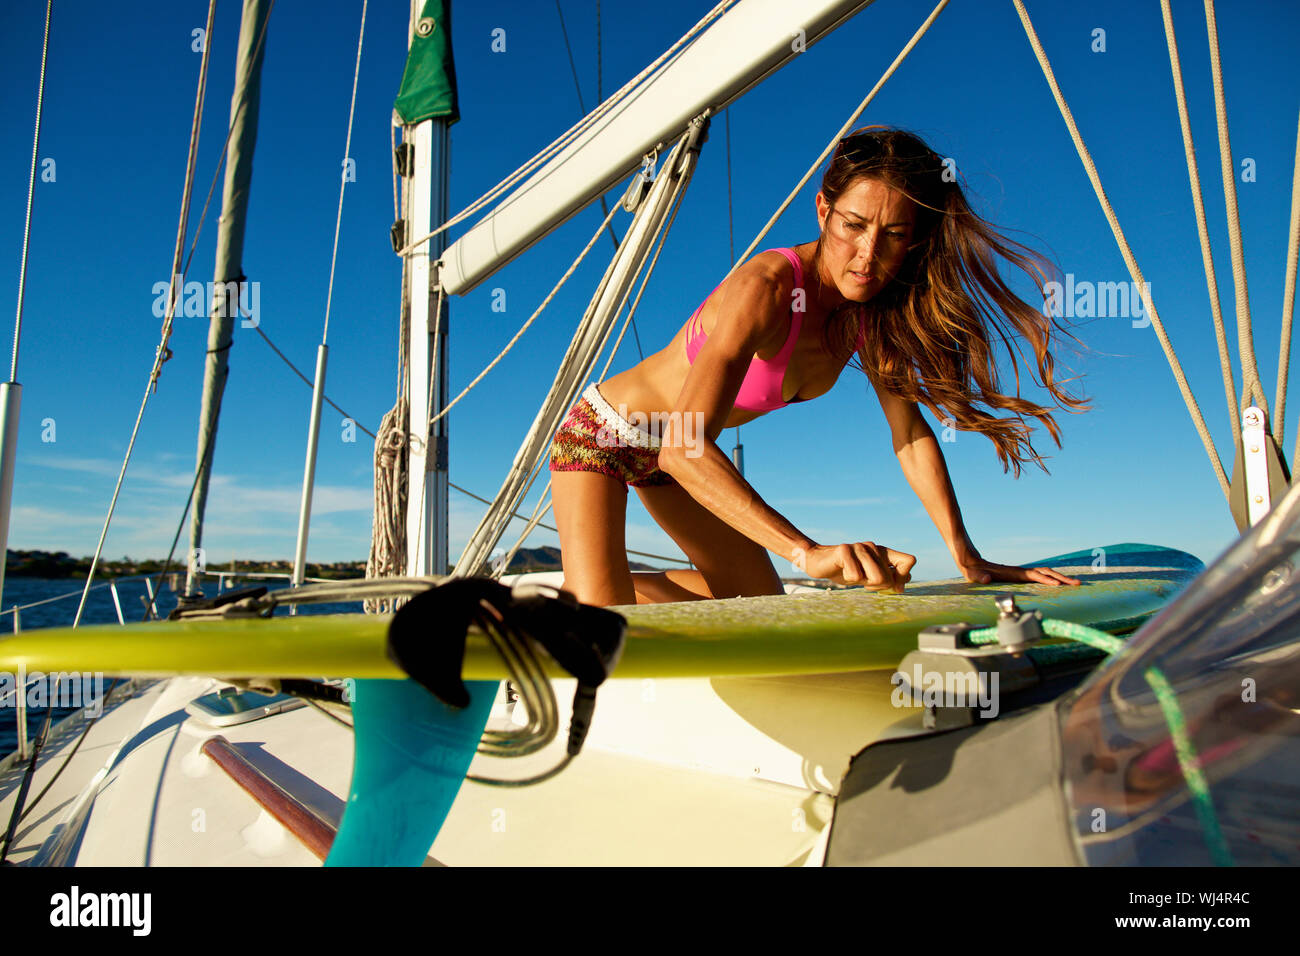 Weibliche surfer waxing Surfboard an sonnigen Segelboot Stockfoto